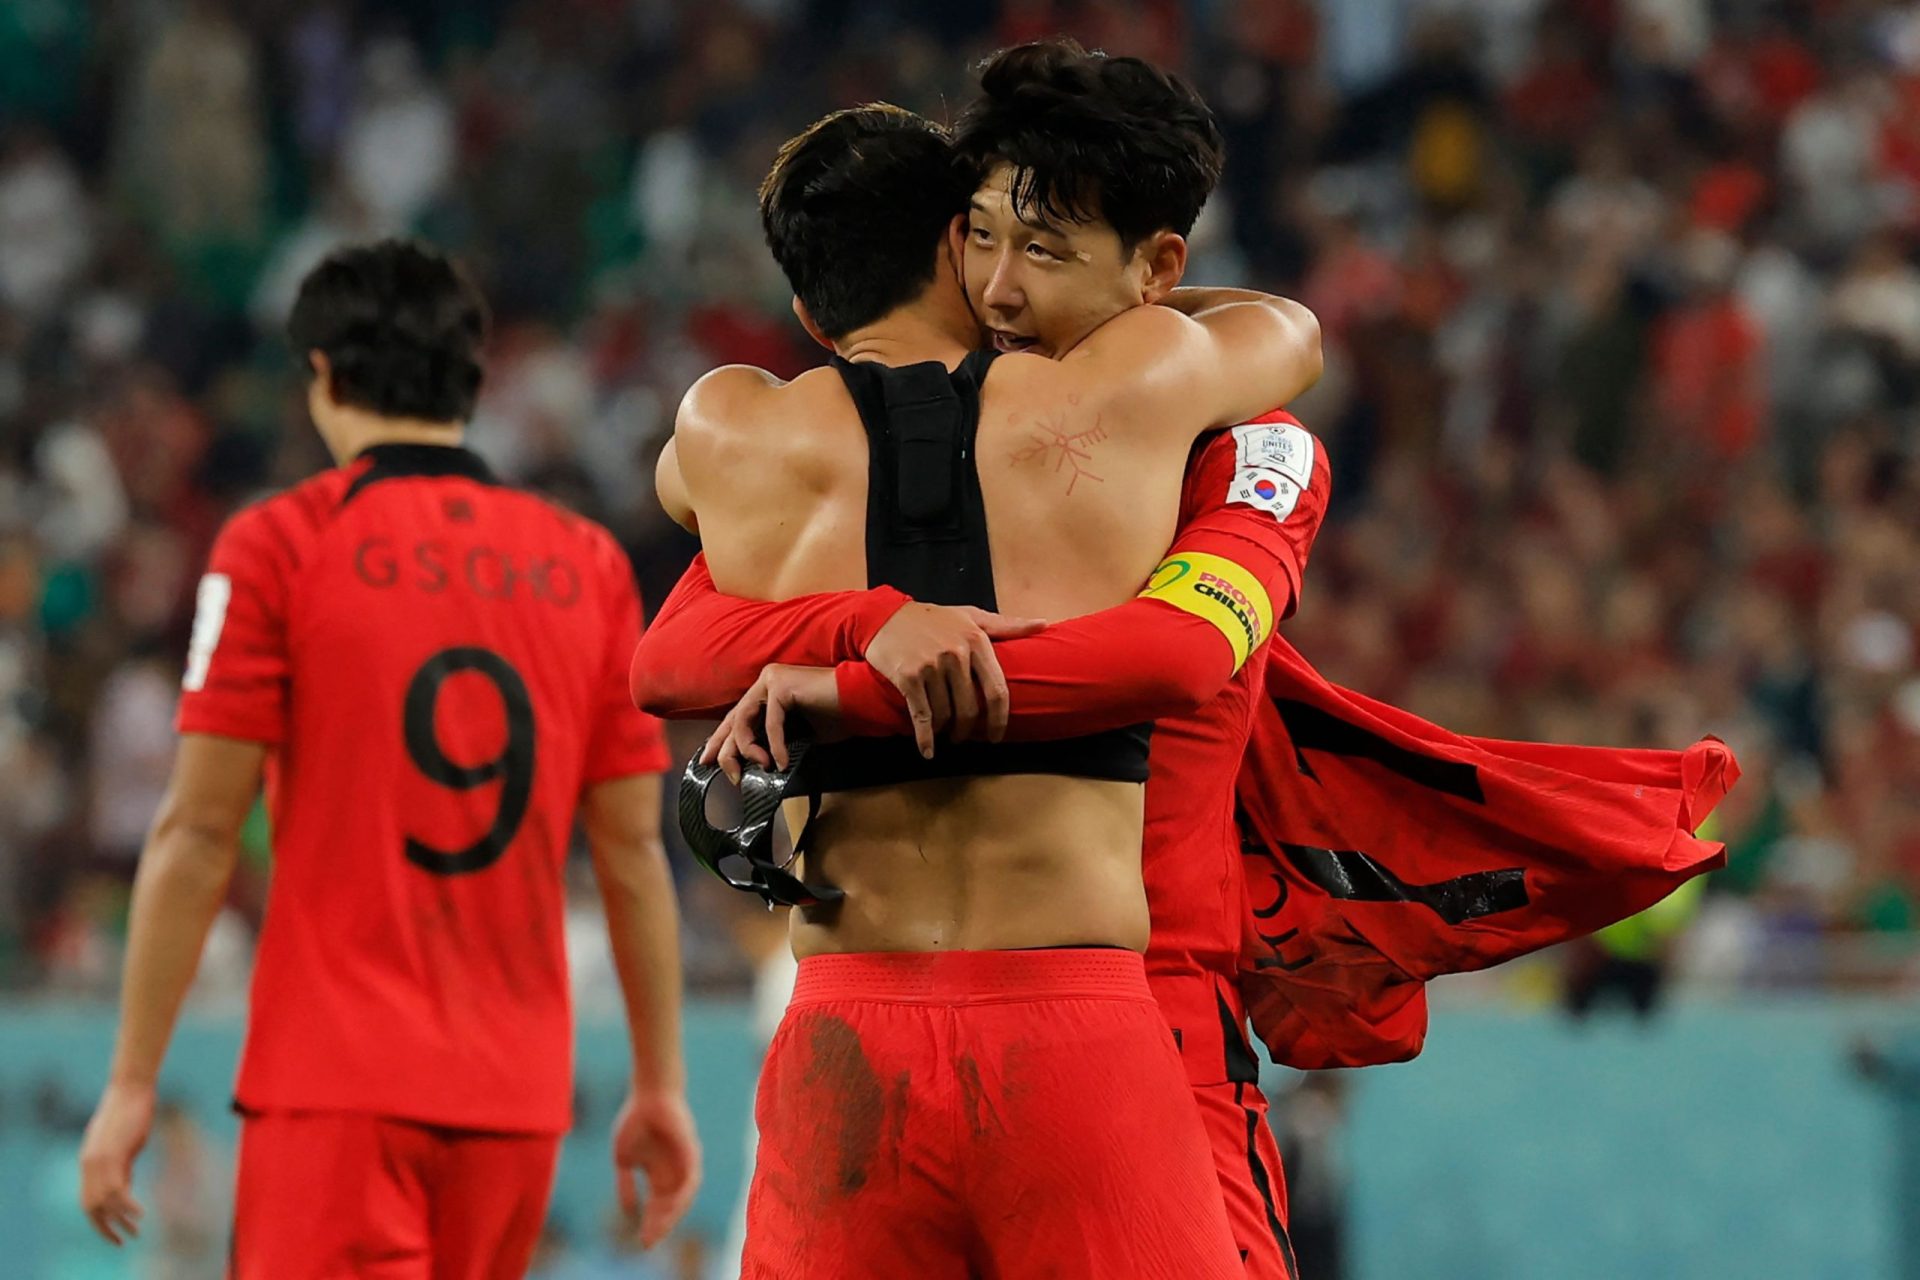 Coreia vence Portugal e passa aos oitavos em segundo do grupo